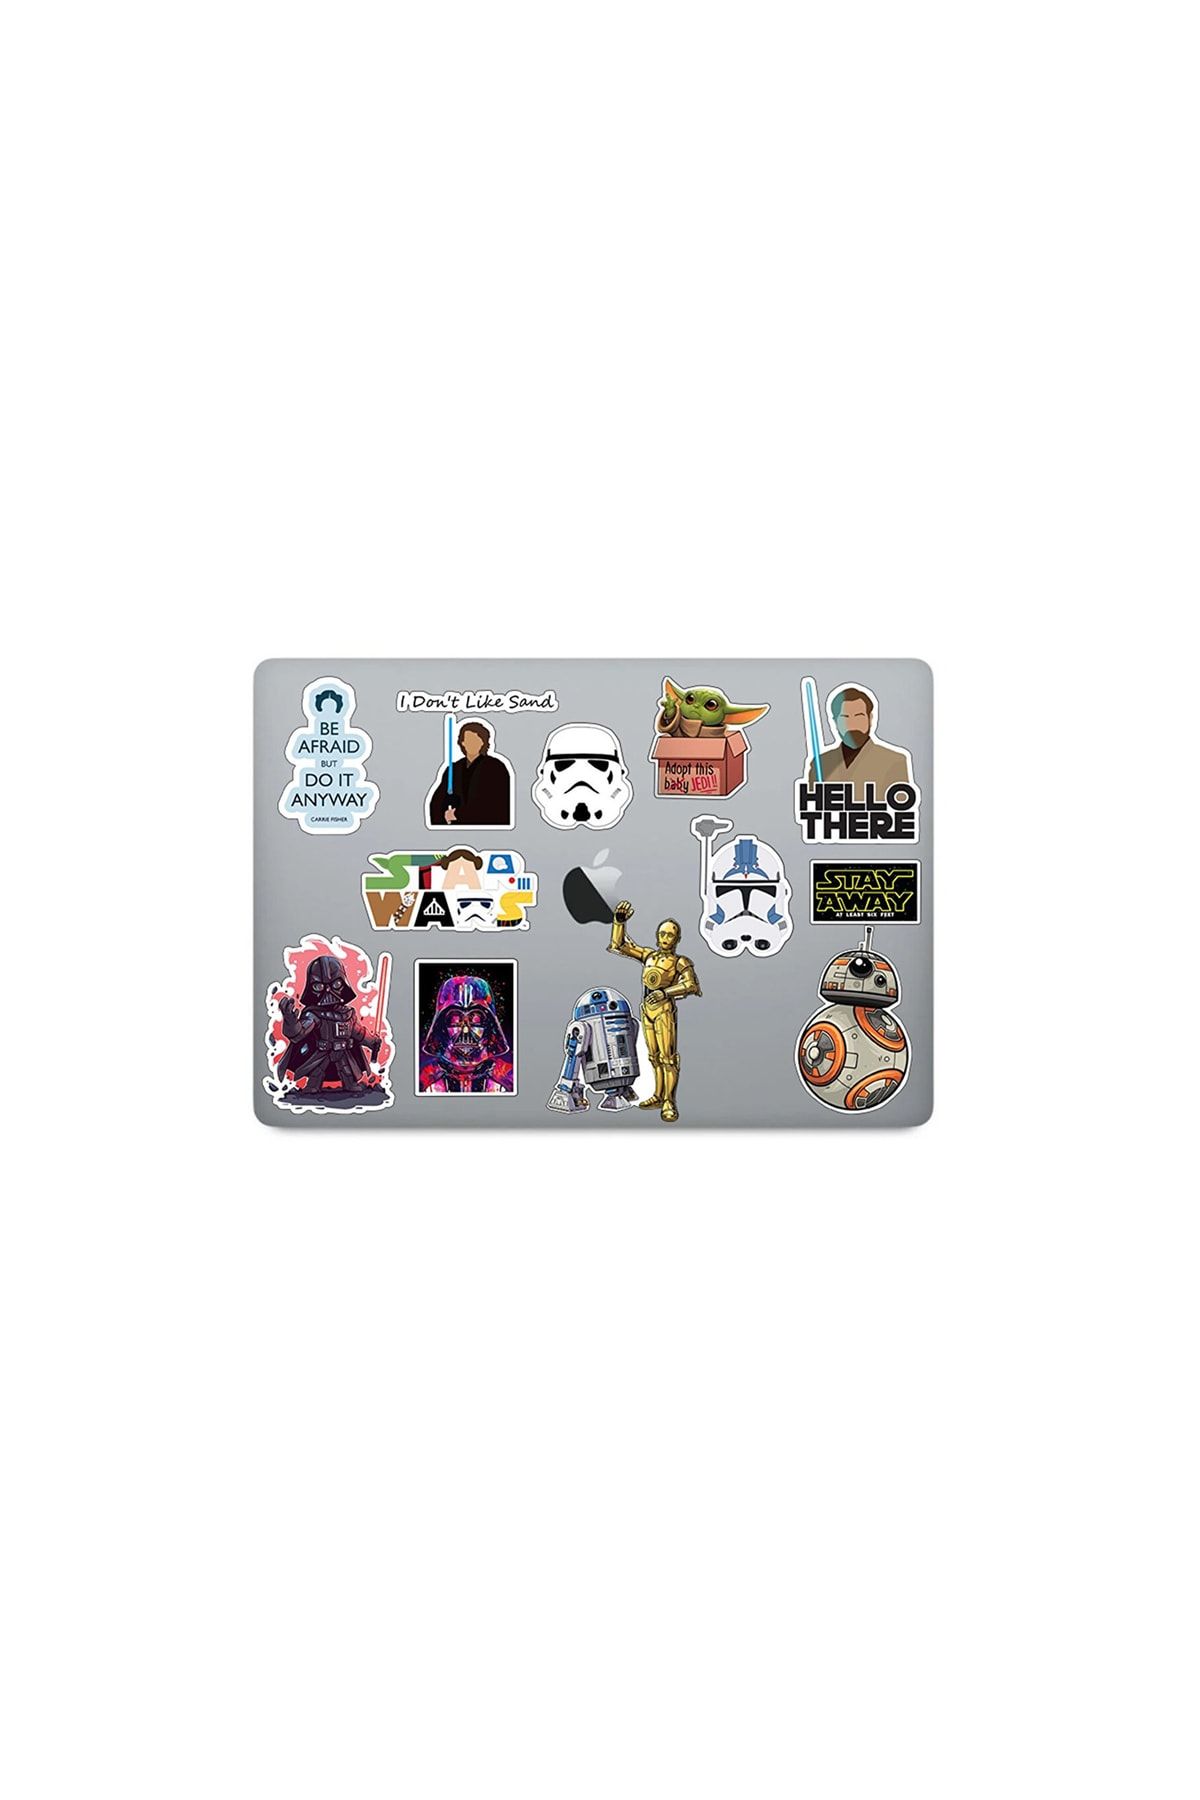 NANOSPACE Star Wars Bilgisayar Telefon Kaykay Termos Kask Için Suya Dayanklı Sticker